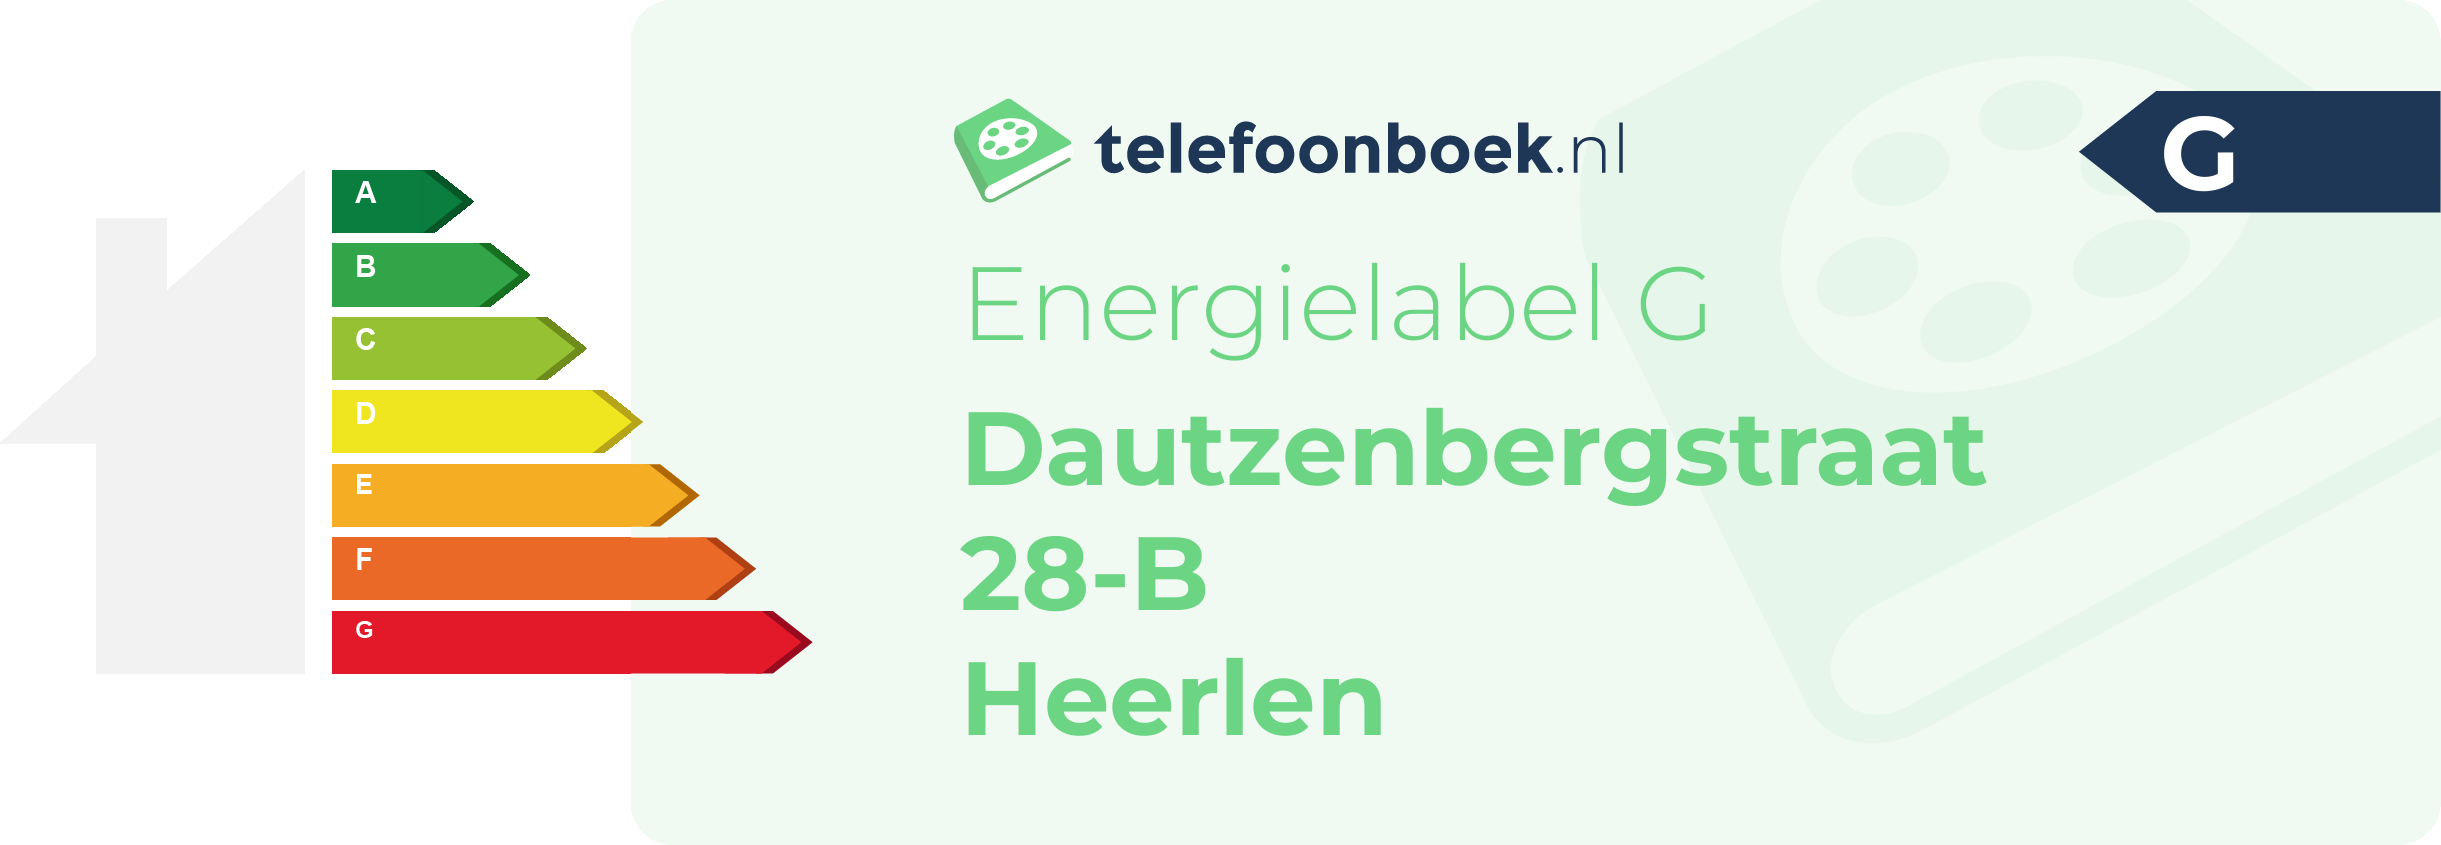 Energielabel Dautzenbergstraat 28-B Heerlen